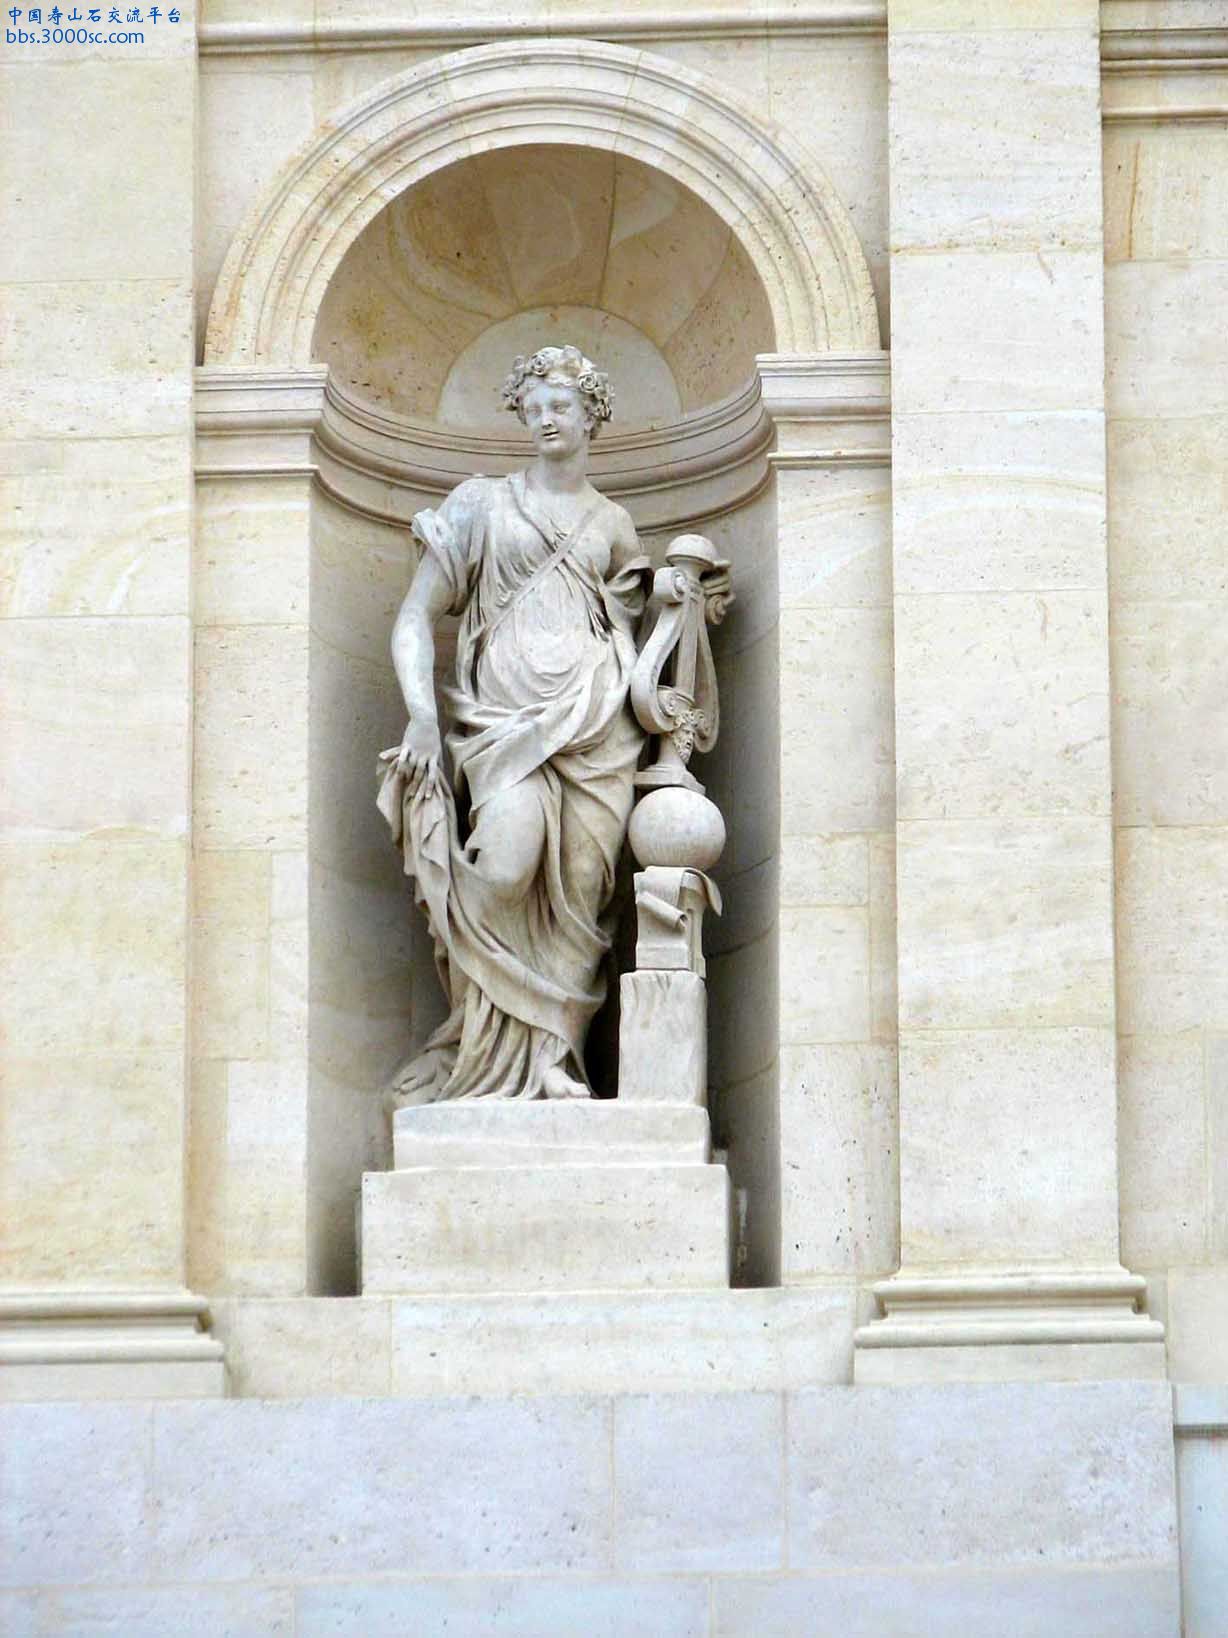 法國梵爾賽宮建築物石像-B03.jpg